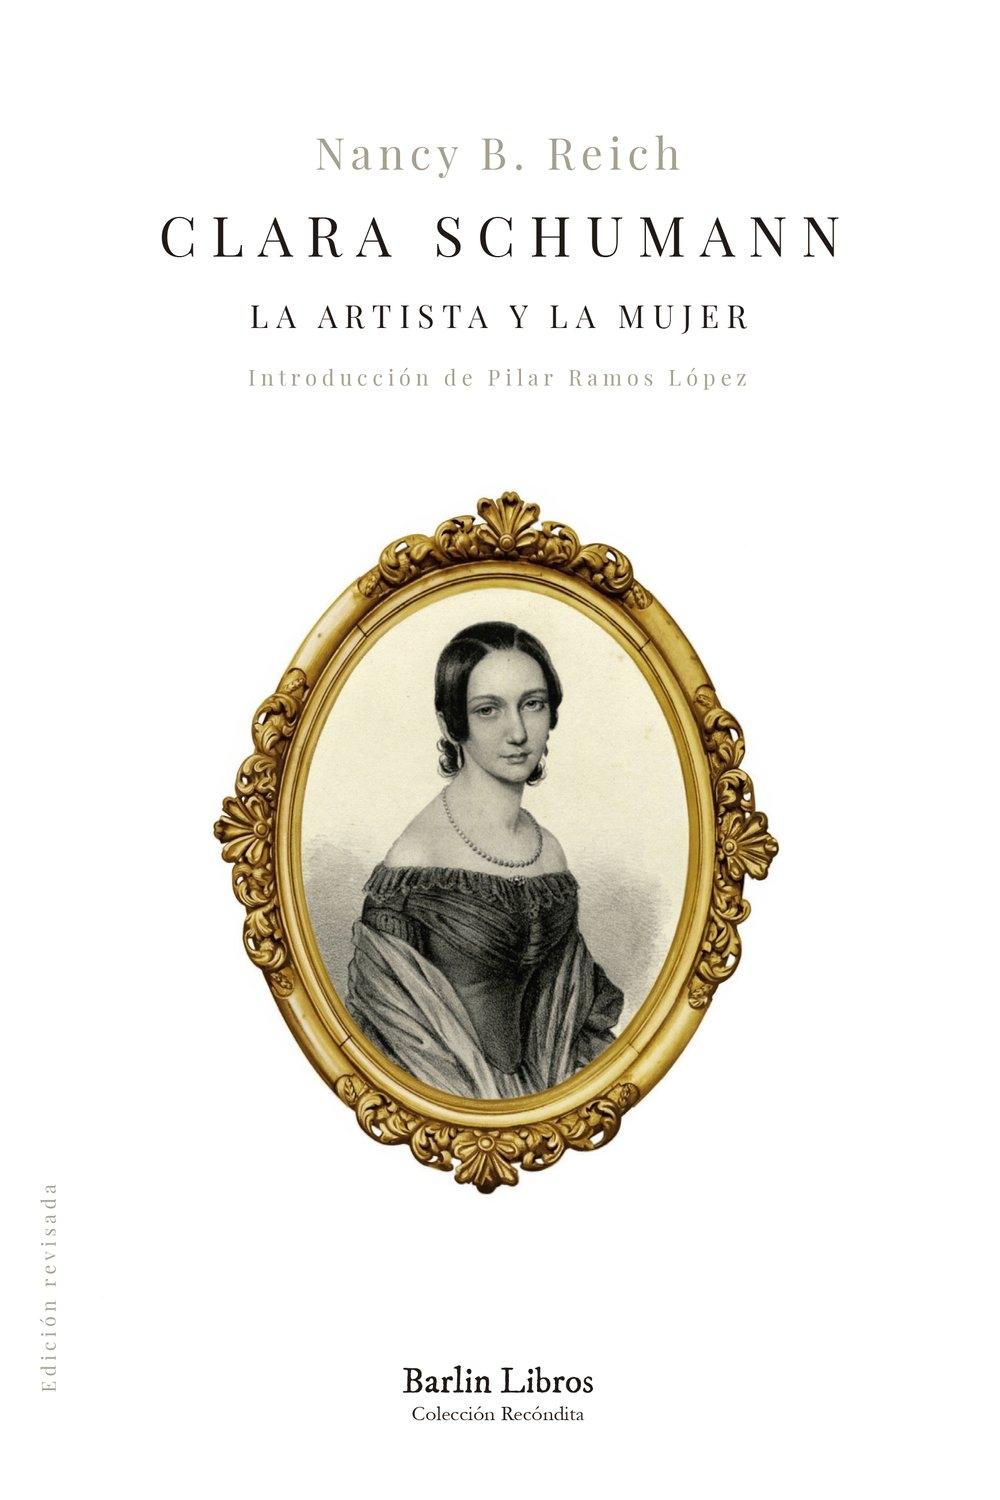 Clara Schumann "La artista y la mujer"